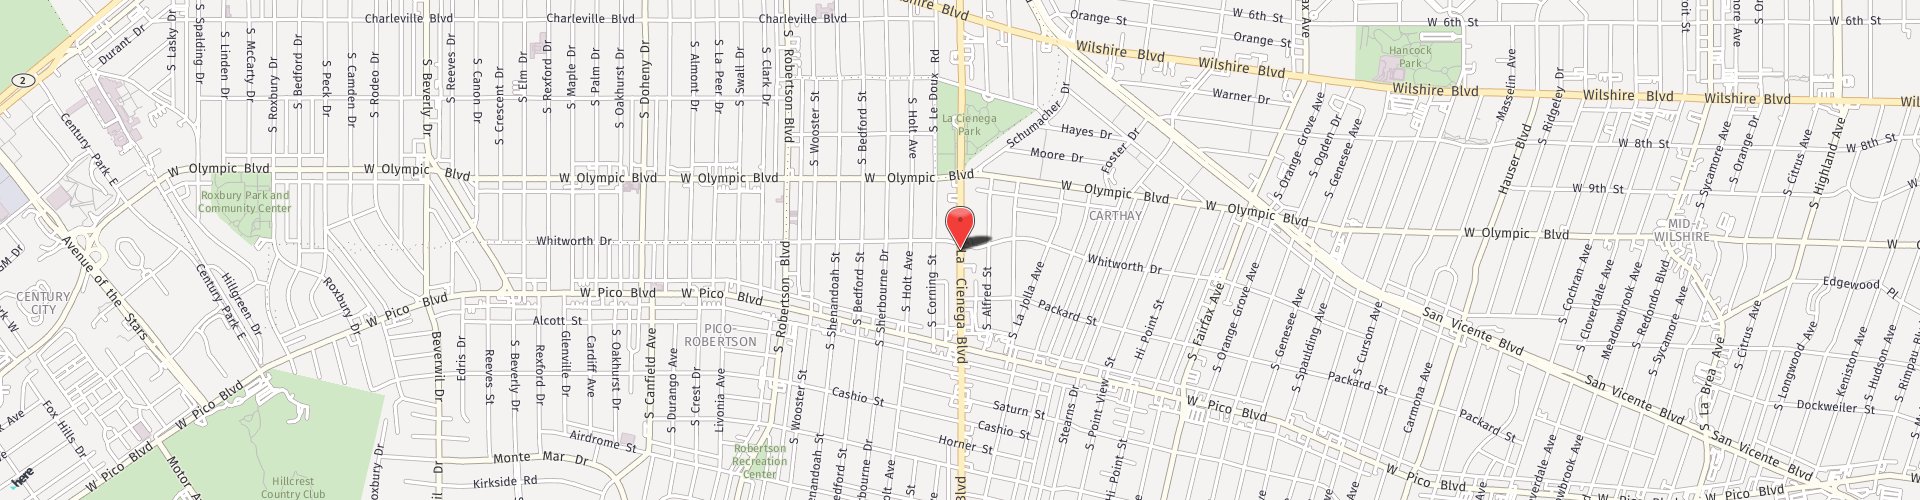 Location Map: 1100 S La Cienega Blvd. Los Angeles, CA 90035